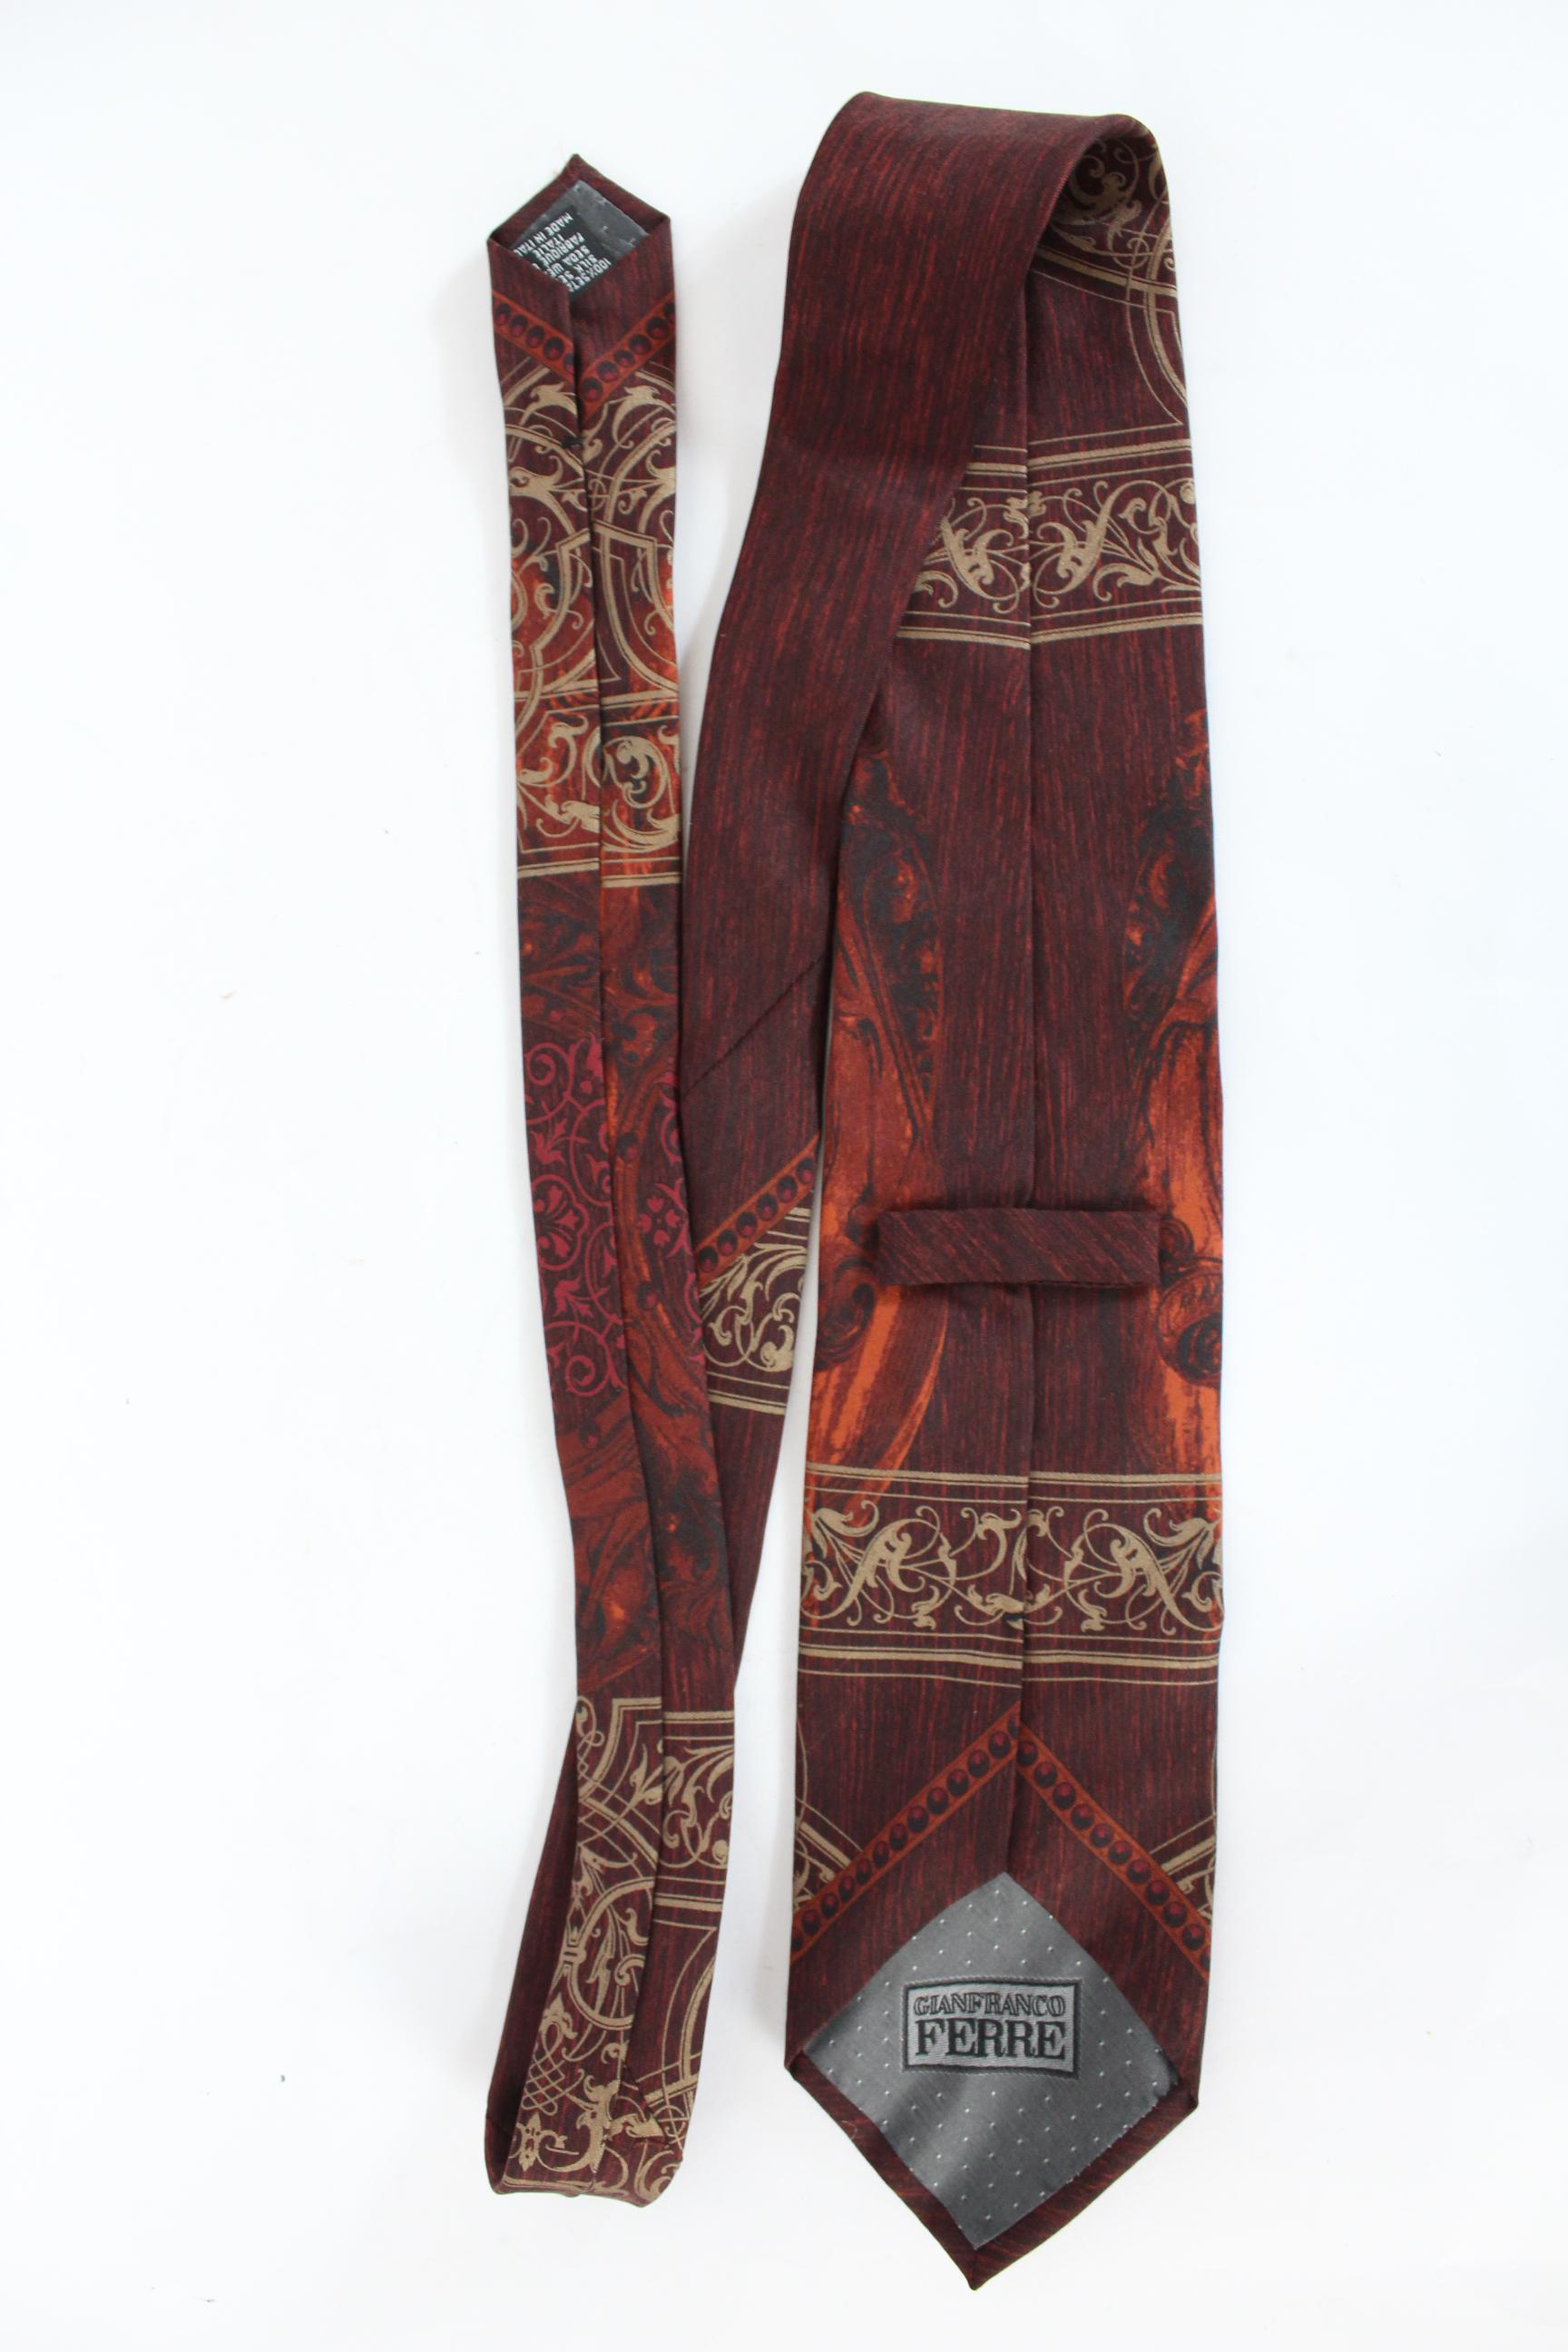 Gianfranco Ferre Vintage-Krawatte aus den 80ern. Rote und beige Farbe mit Blumenmuster. 100% Seide. Hergestellt in Italien. Ausgezeichneter Vintage-Zustand

Länge: 143 cm
Breite: 9 cm